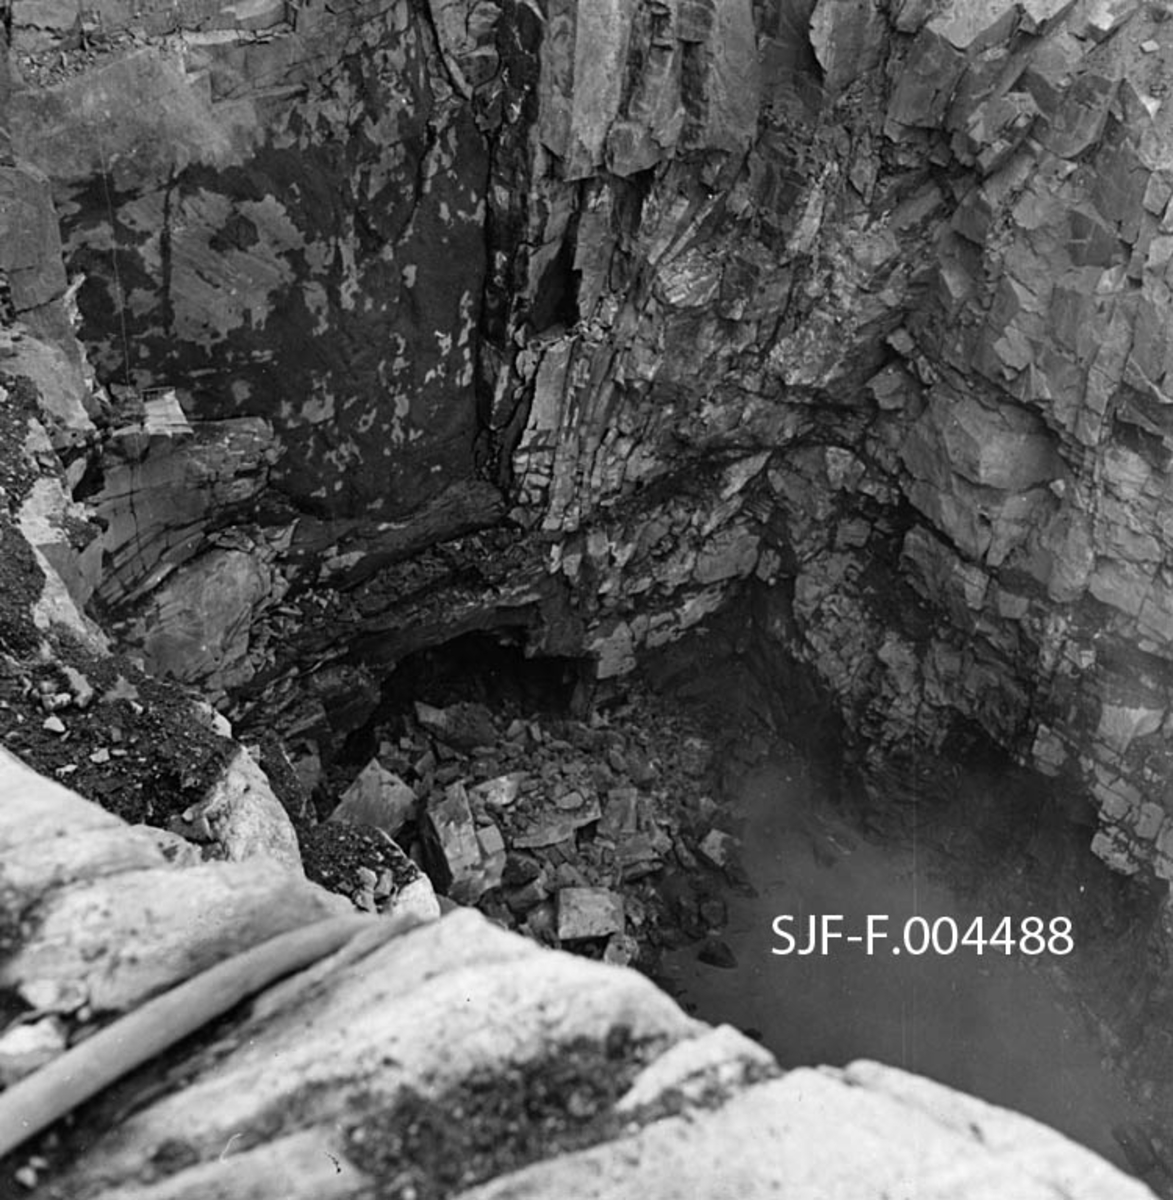 Gjennomslag for driftstunnelen til det som skulle bli Geithusfoss kraftverk på Modum i Buskerud.  Fotografiet er tatt 16. august 1960, fra ei berghylle ned mot ei sjakt hvor det står en del skittenbrunt vann, men hvor vi også aner en mørk åpning i fjellet.  Driftstunnelen var bortimot 110 meter lang, og gikk fra et inntakspunkt på østre elvebredd ovenfor fossen, under industrianlegget til Drammenselvens Papirfabrikker og til ei kraftverkstomt nedenfor fabrikken.  Dette fotografiet er antakelig tatt på den søndre sida.  Det tok et drøyt år fra tunnelgjennomslaget til kraftstasjonen ble satt i drift, 1. oktober 1961. 